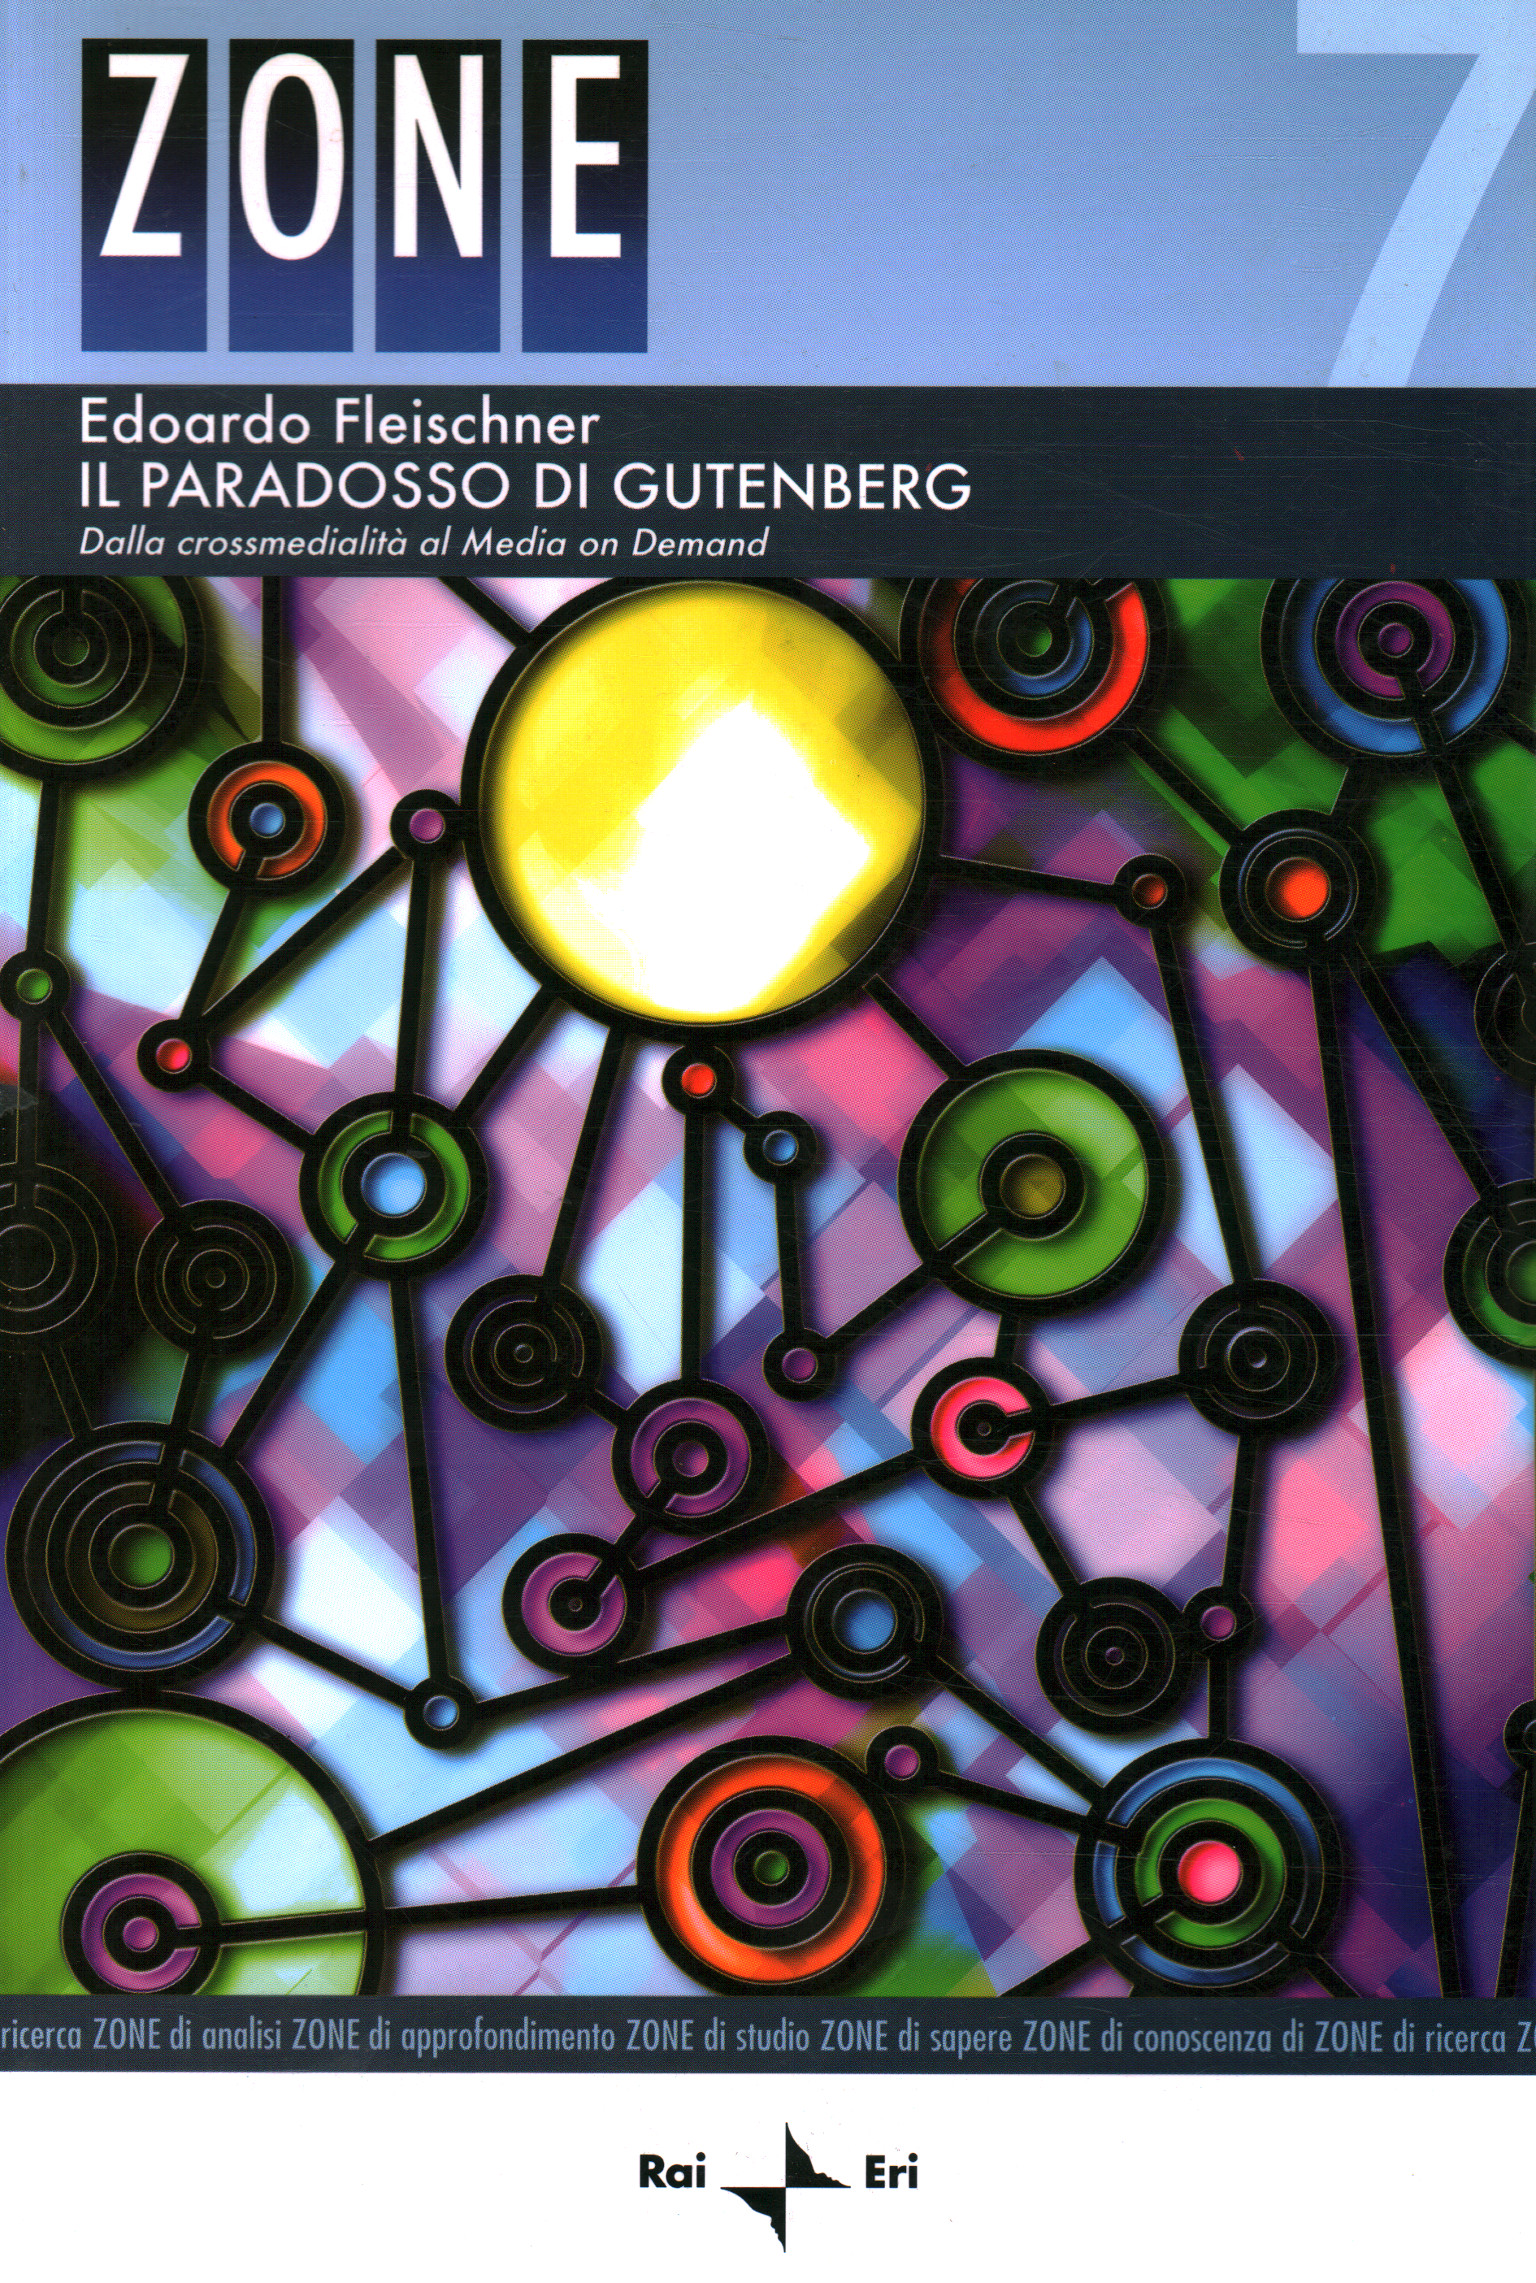 The Gutenberg paradox, Edoardo Fleischner